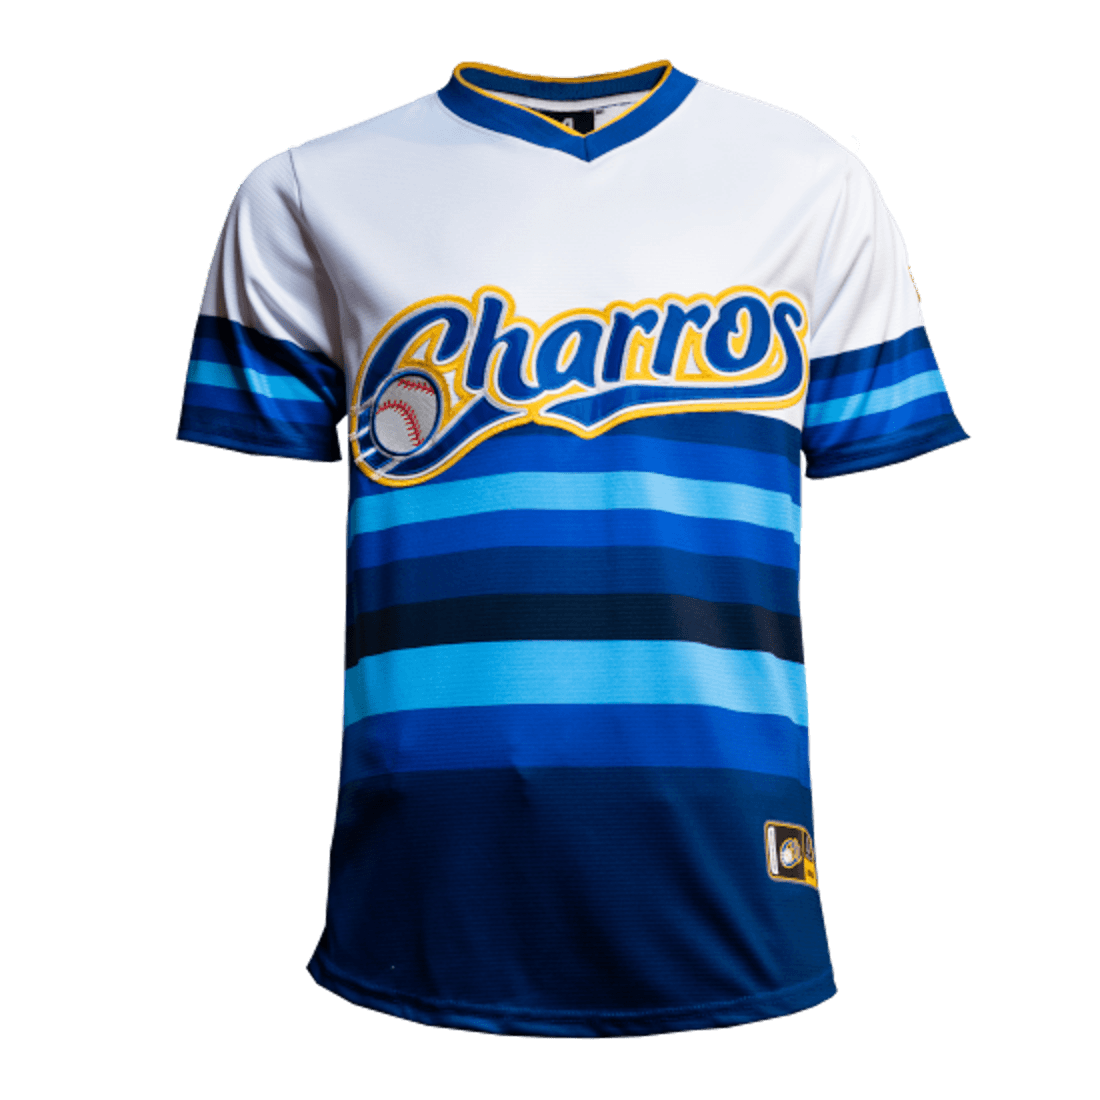 Charros de Jalisco v neck Jersey - BeisbolMXShop